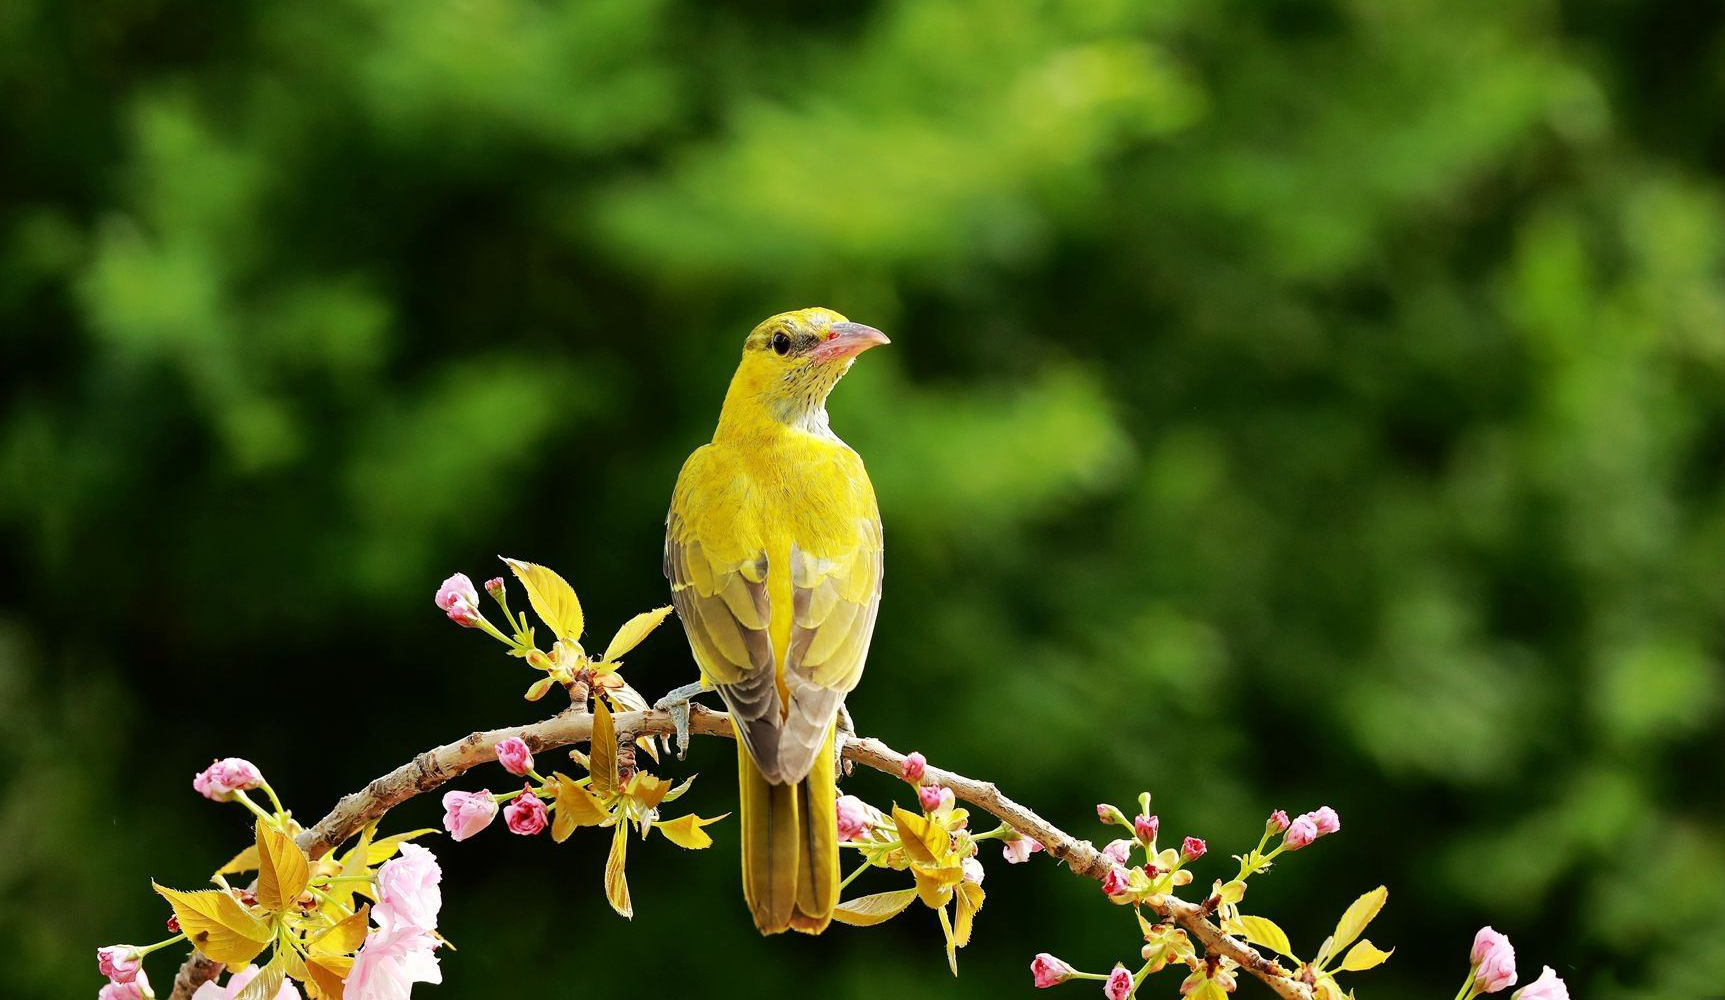 发现诗词之美:在诗词中出现最频繁的黄莺和黄鹂有什么区别?